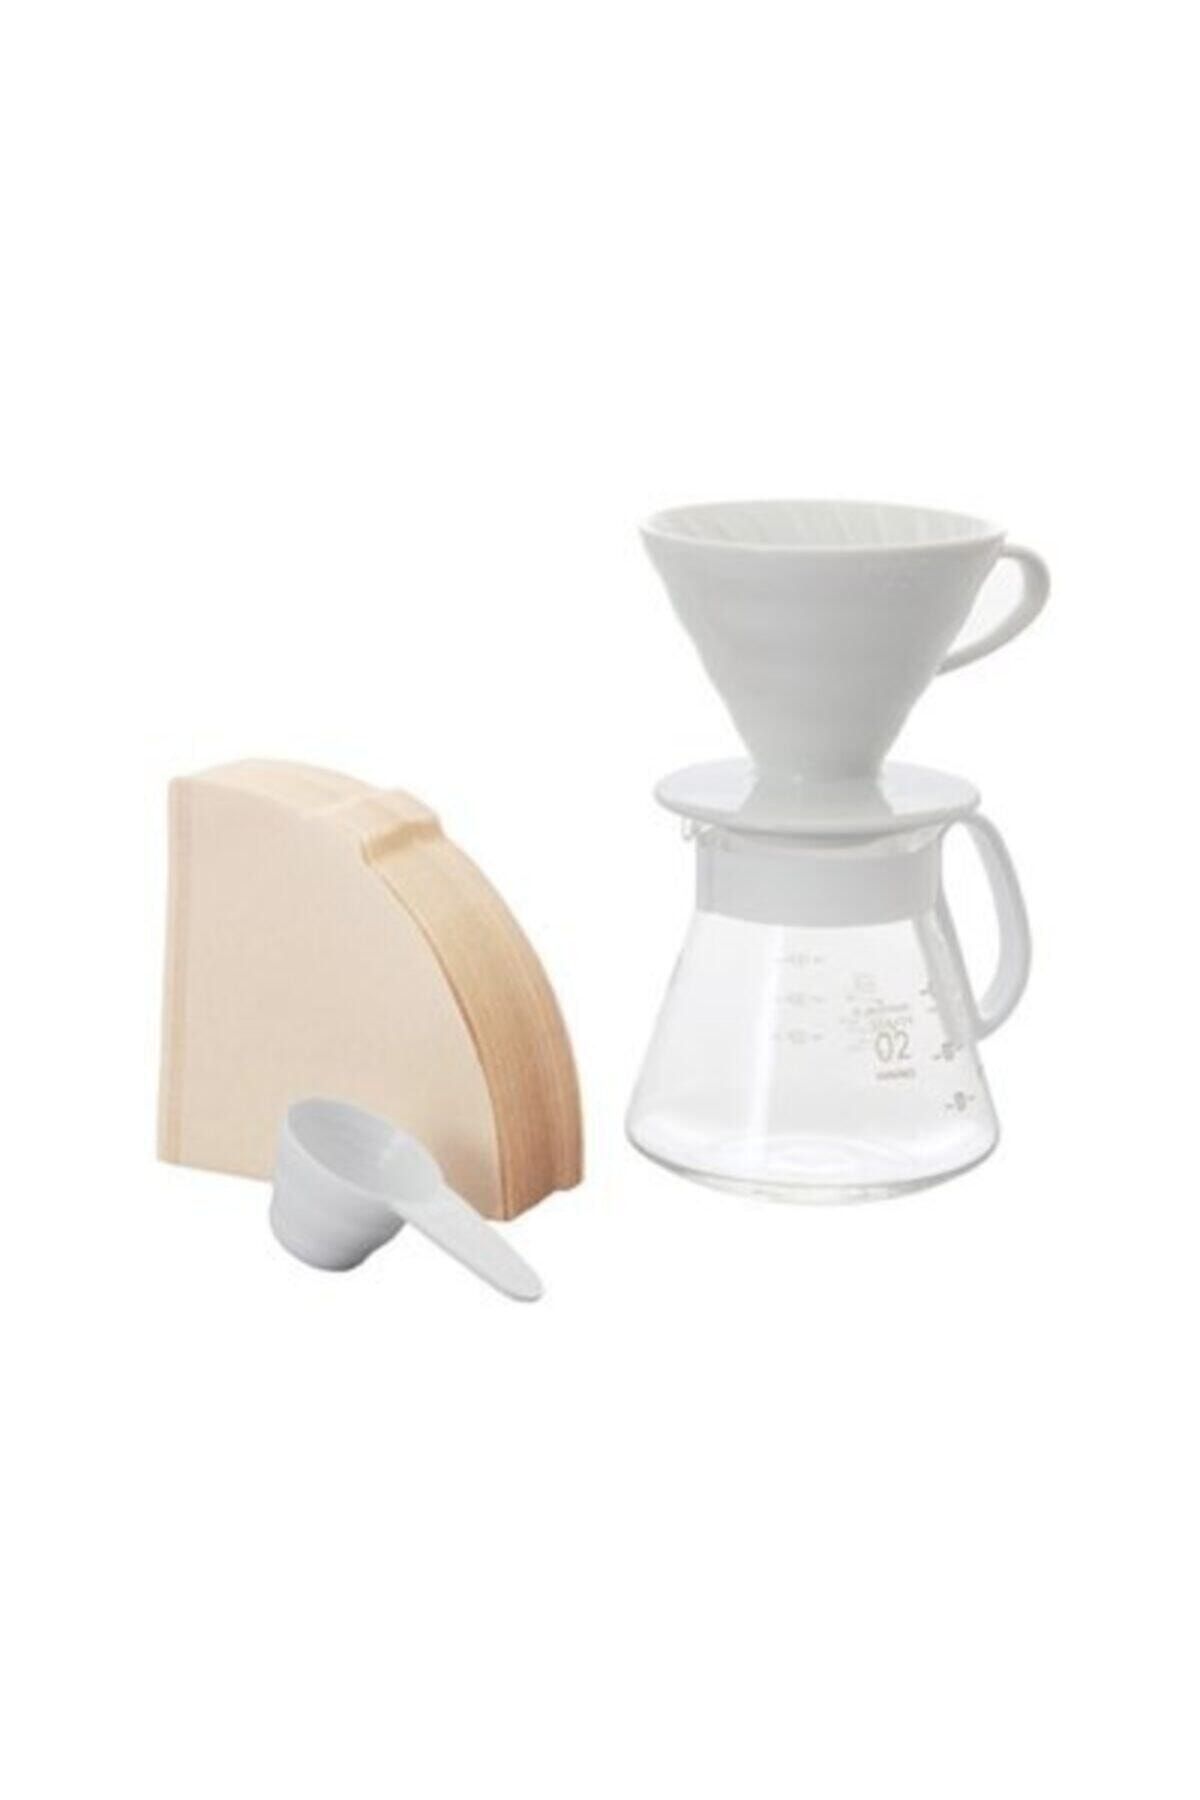 Hario V60 02 Coffee Maker (white Ceramic) - Harıo V60 02 Kahve Demleme Seti (beyaz Seramik)